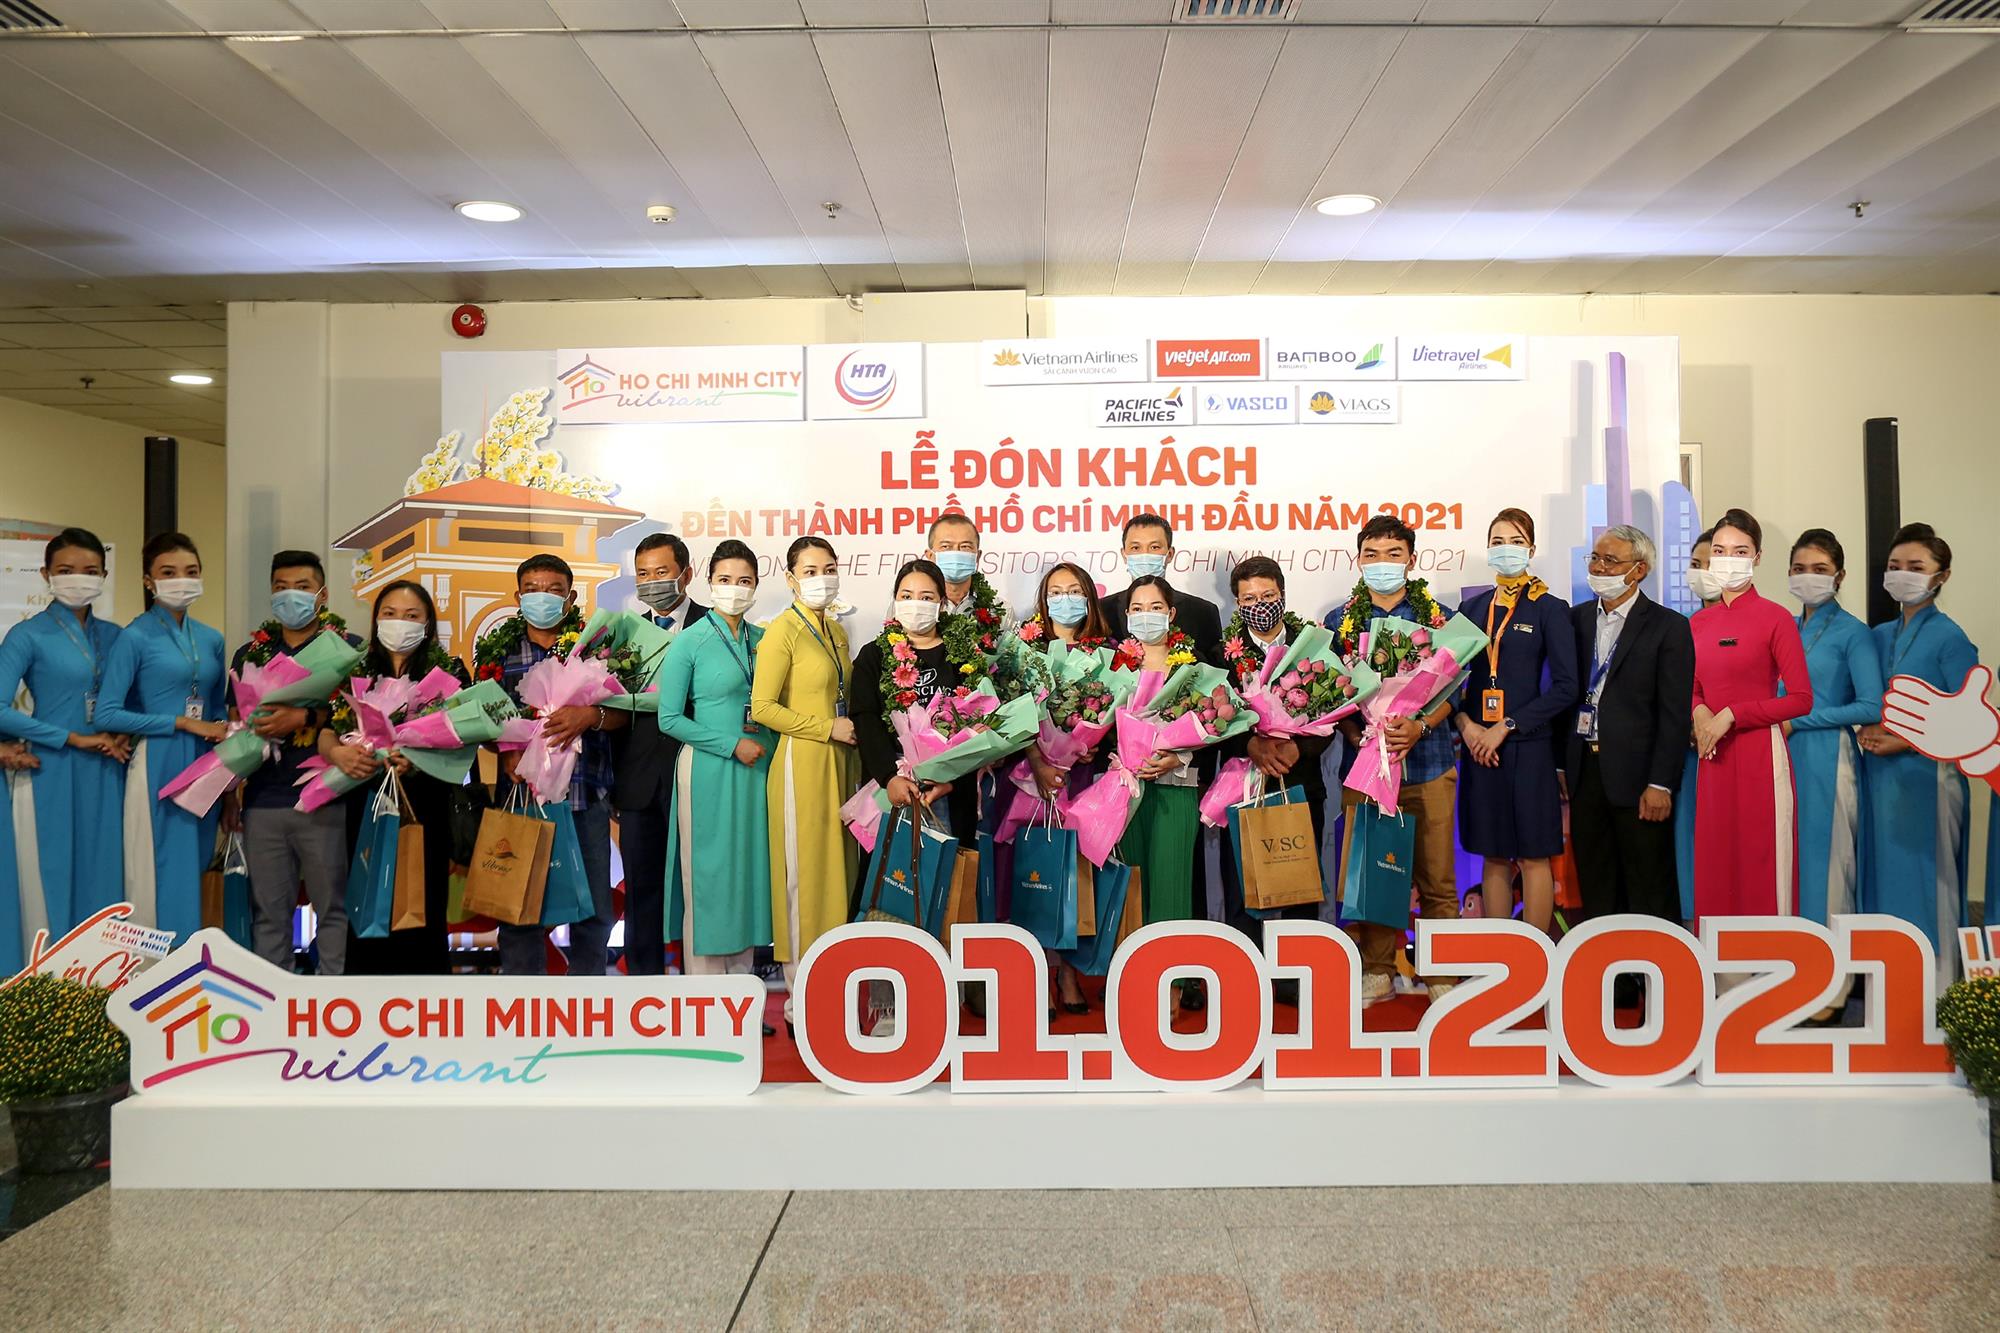 Vietnam Airlines Group chào đón các vị khách đầu tiên trong năm 2021 trên cả nước